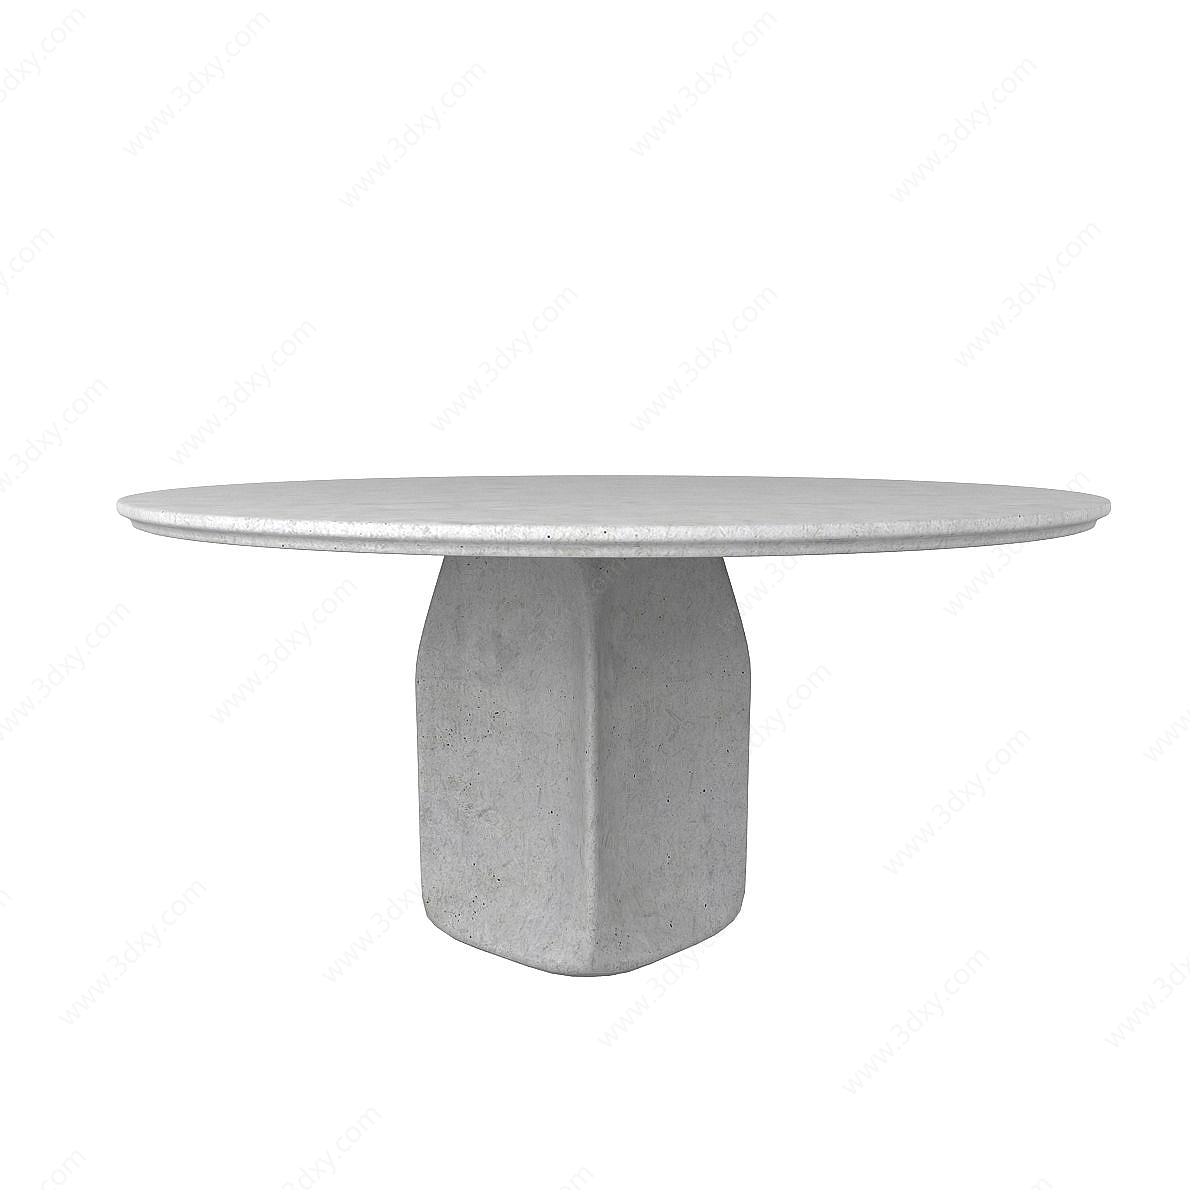 石头圆桌3D模型